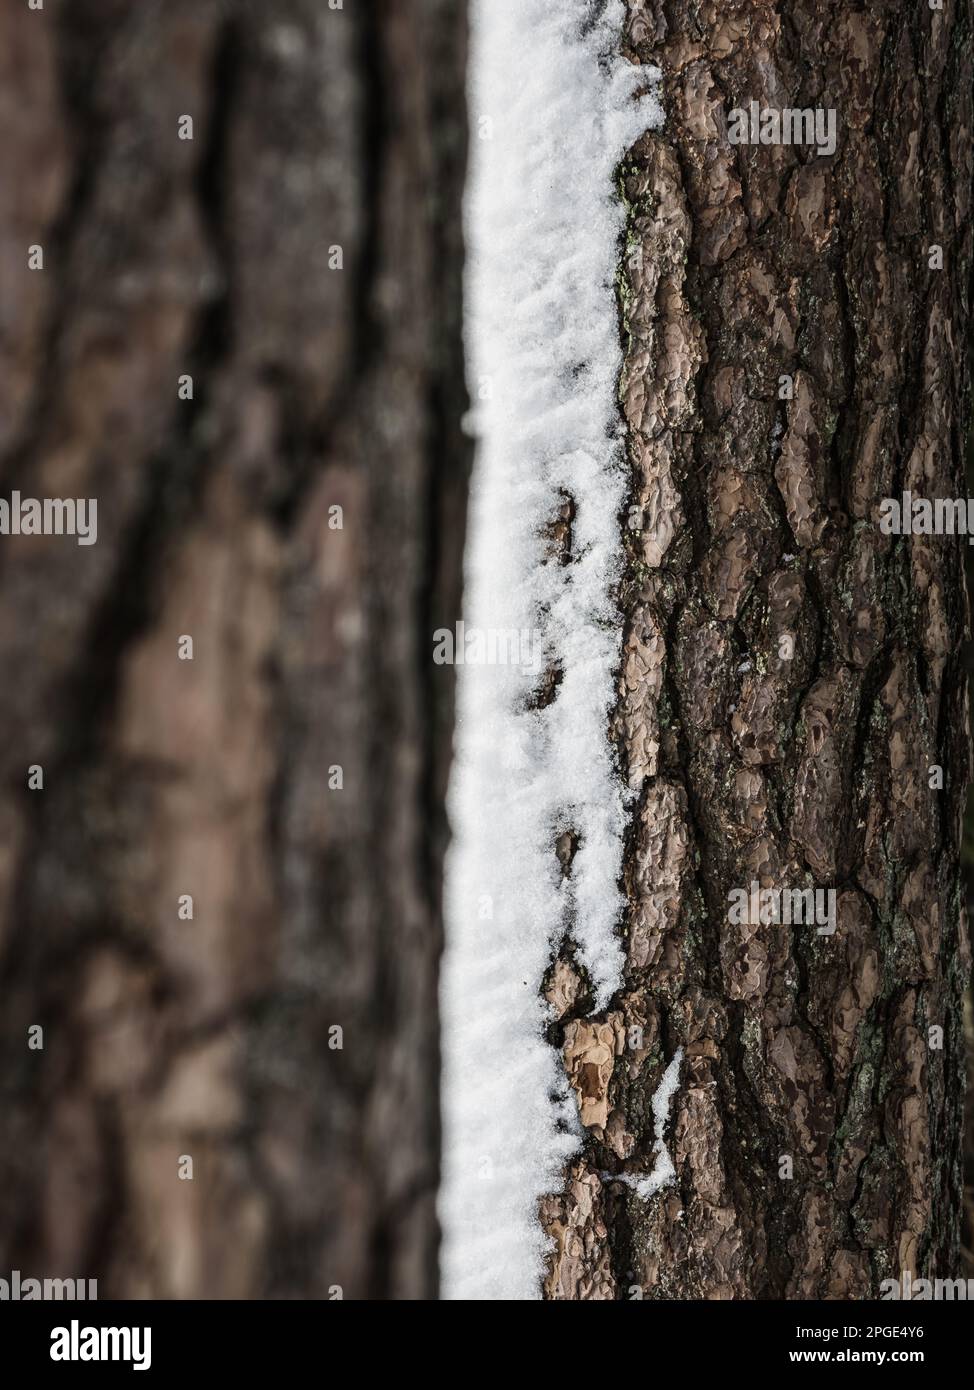 Gros plan d'un tronc d'arbre texturé dans la neige, avec écorce et branches rugueuses, révélant ses tiges et feuilles ligneuses contre le sol. Banque D'Images